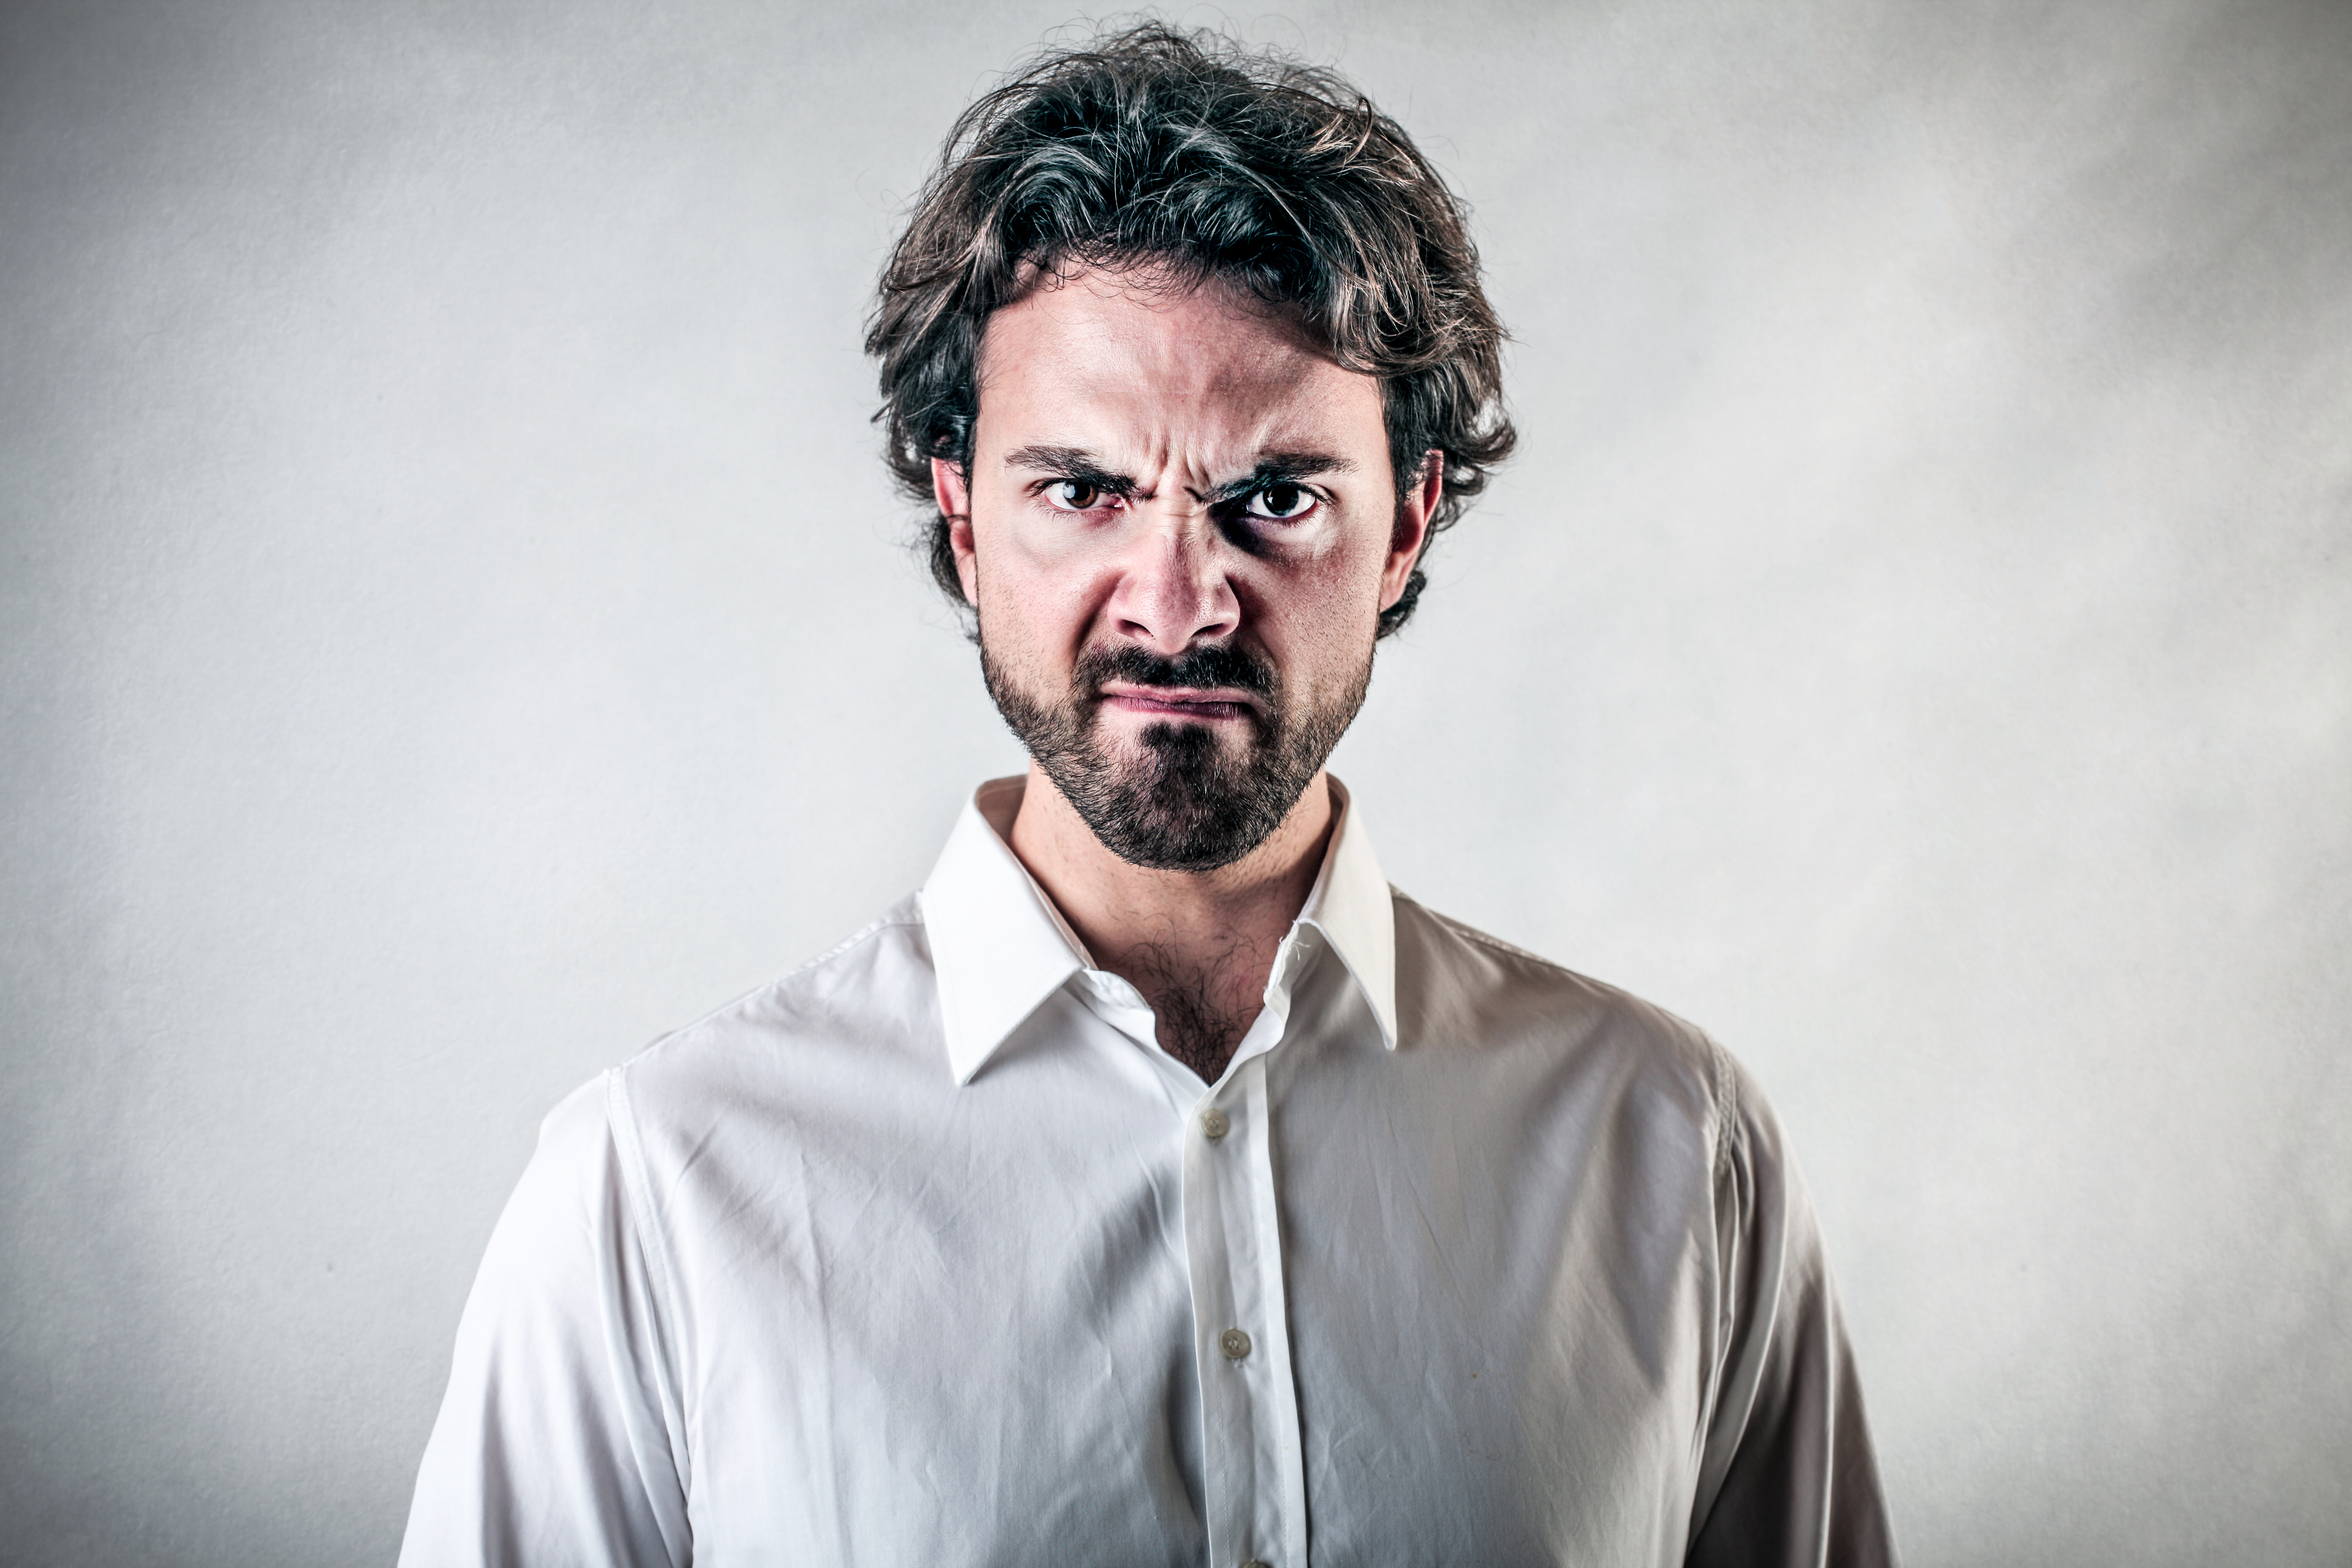 Homme en colère | Source : Shutterstock